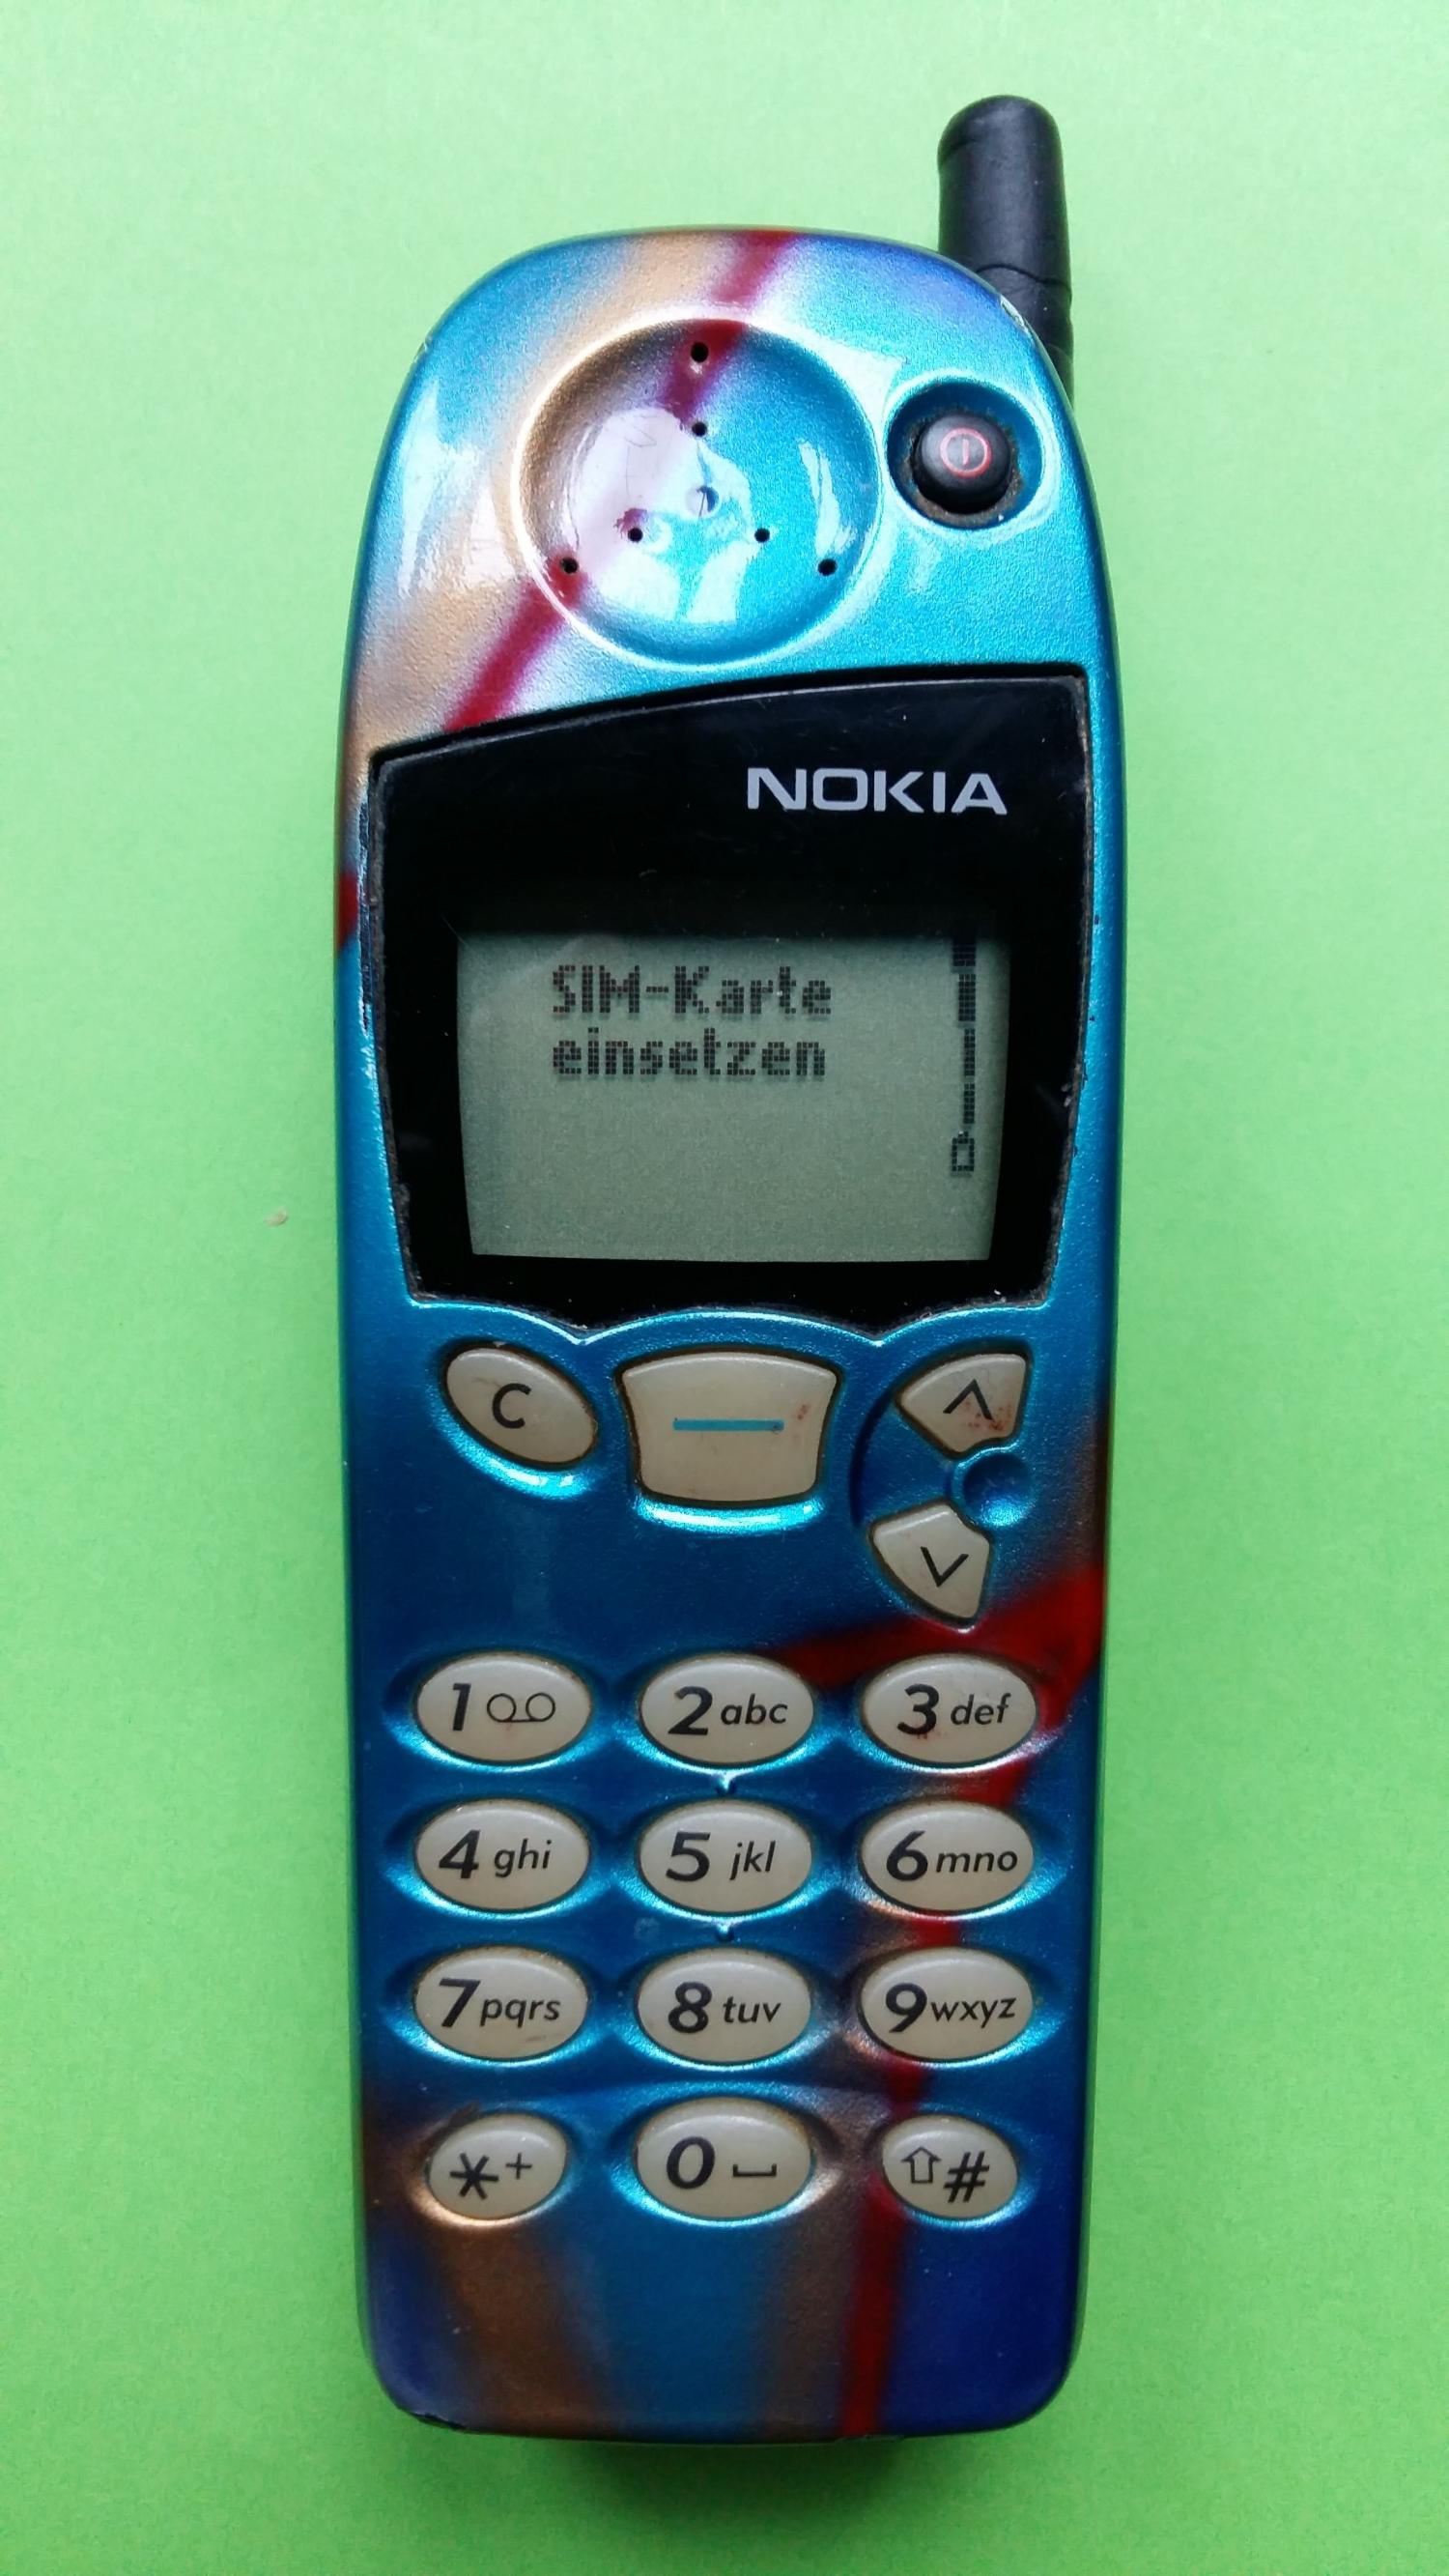 image-7304884-Nokia 5110 (15)1.jpg